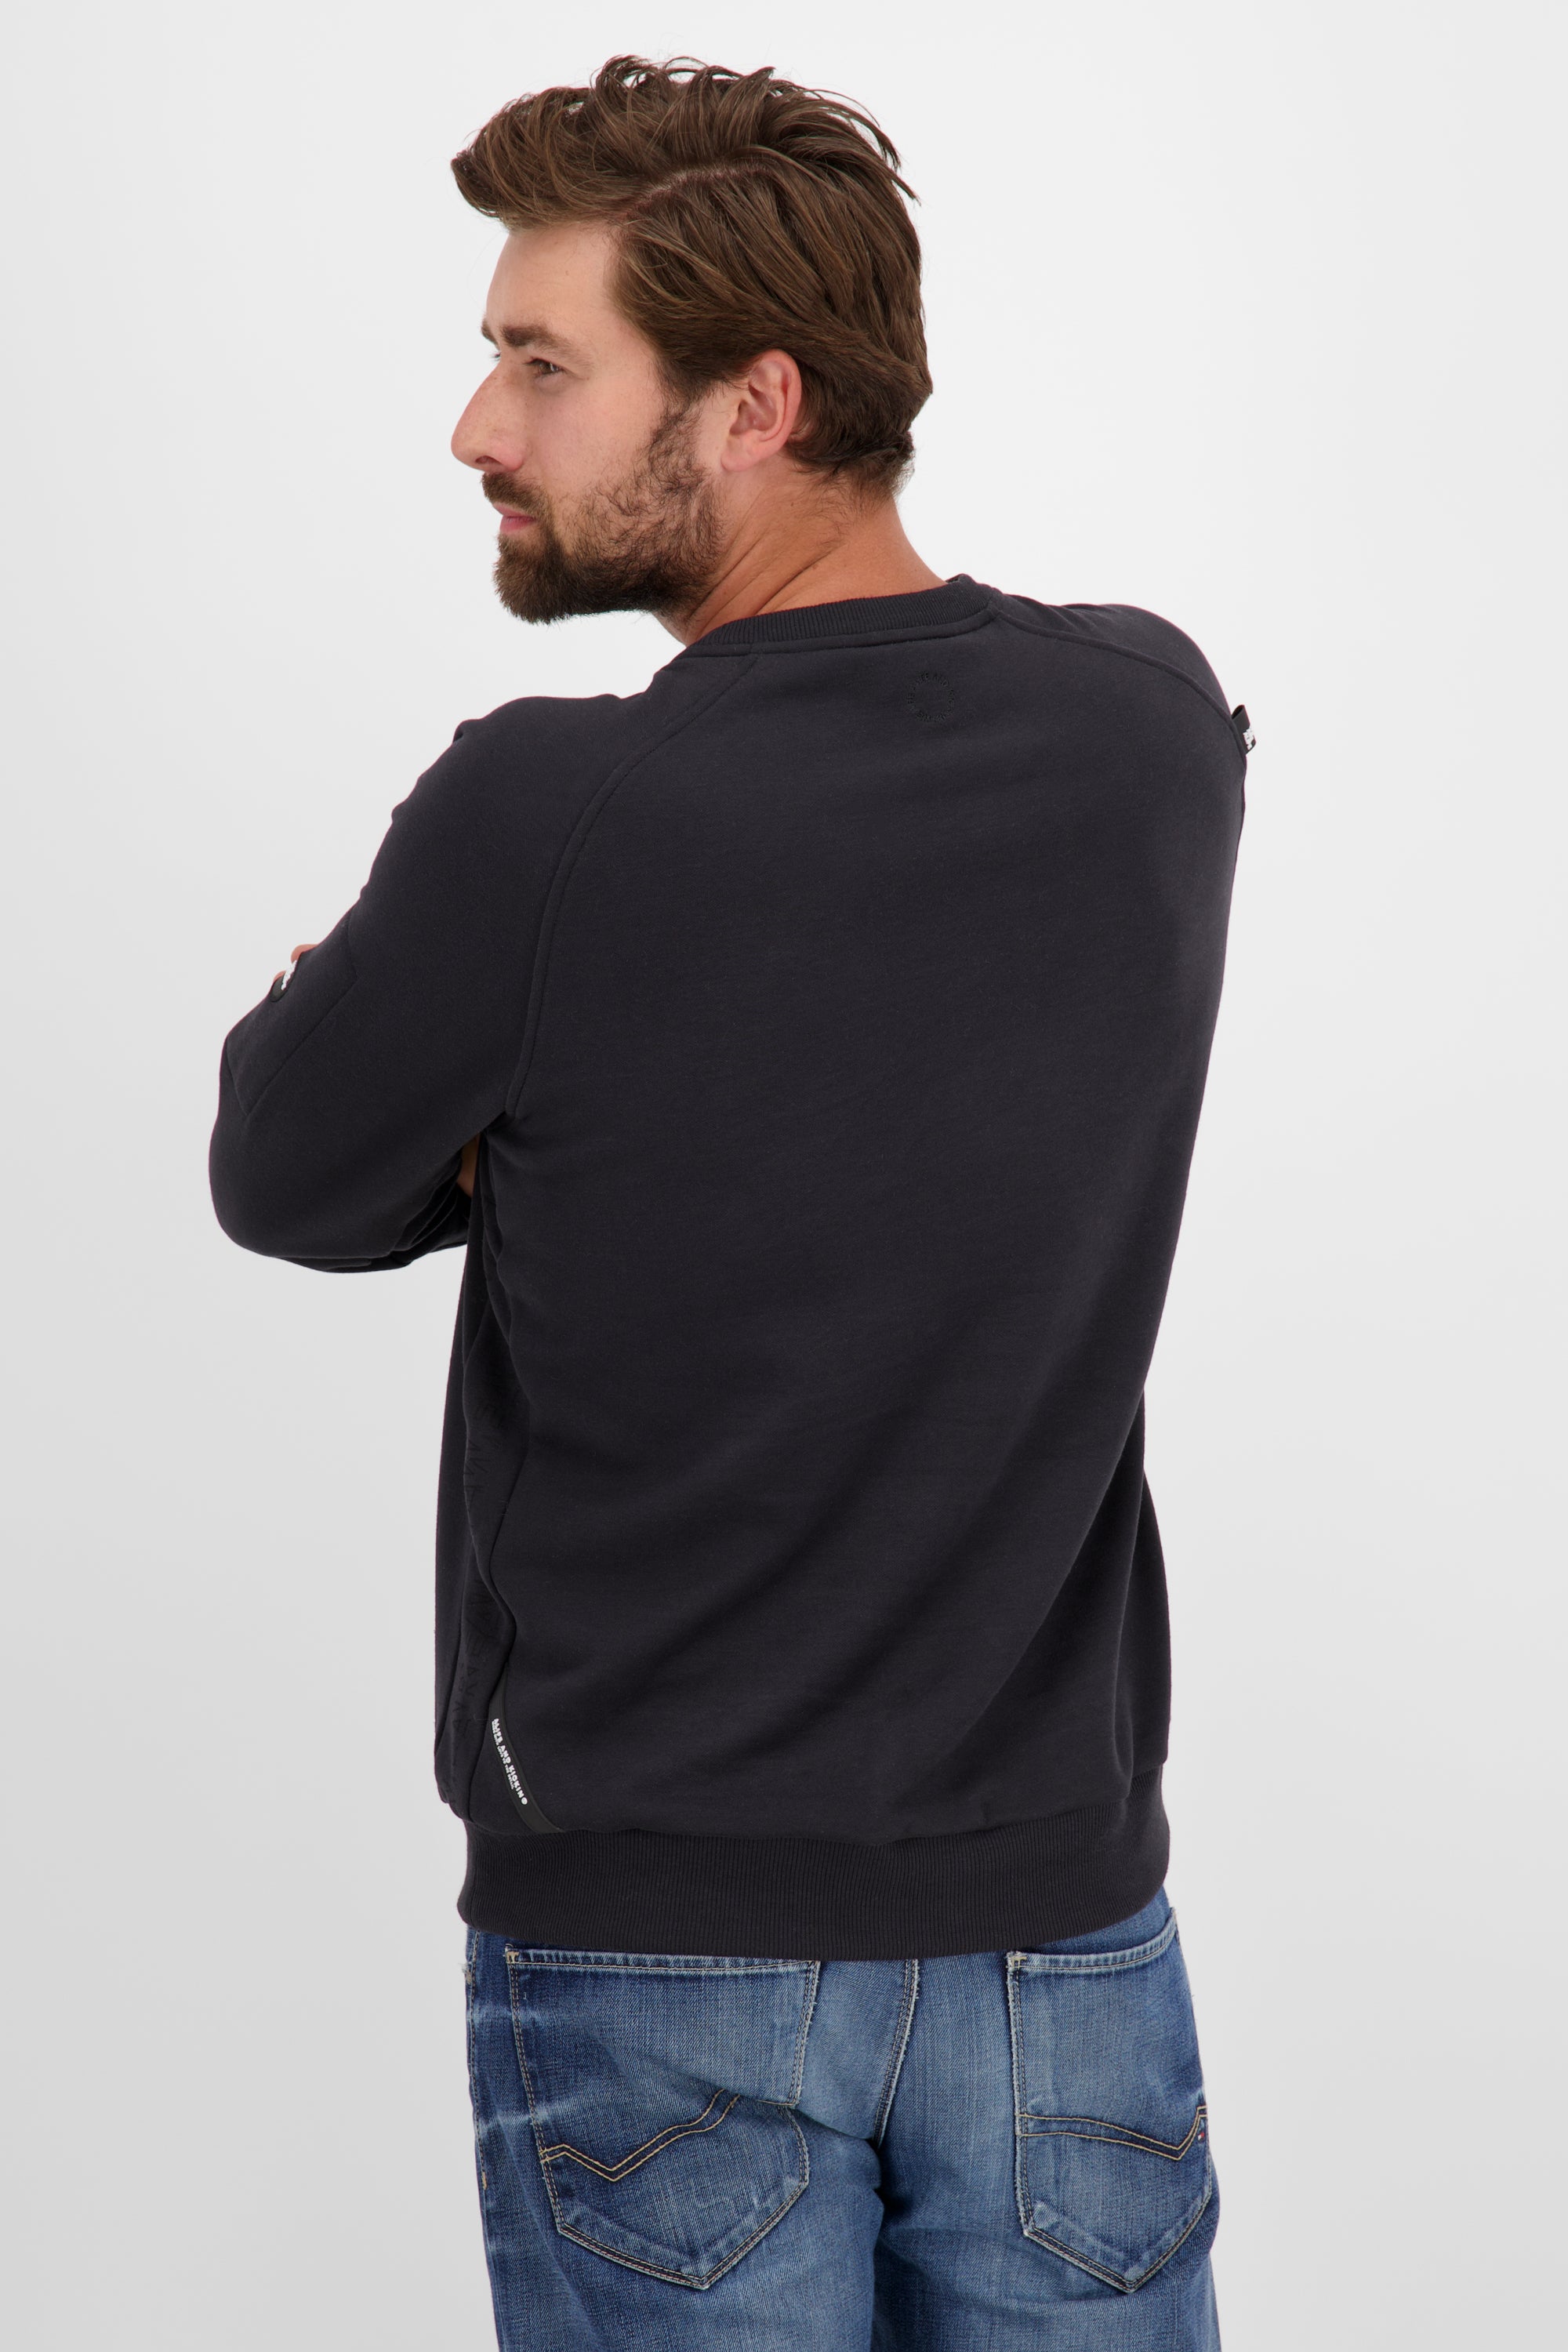 VinnAK A Sweatshirt mit Tasche Schwarz